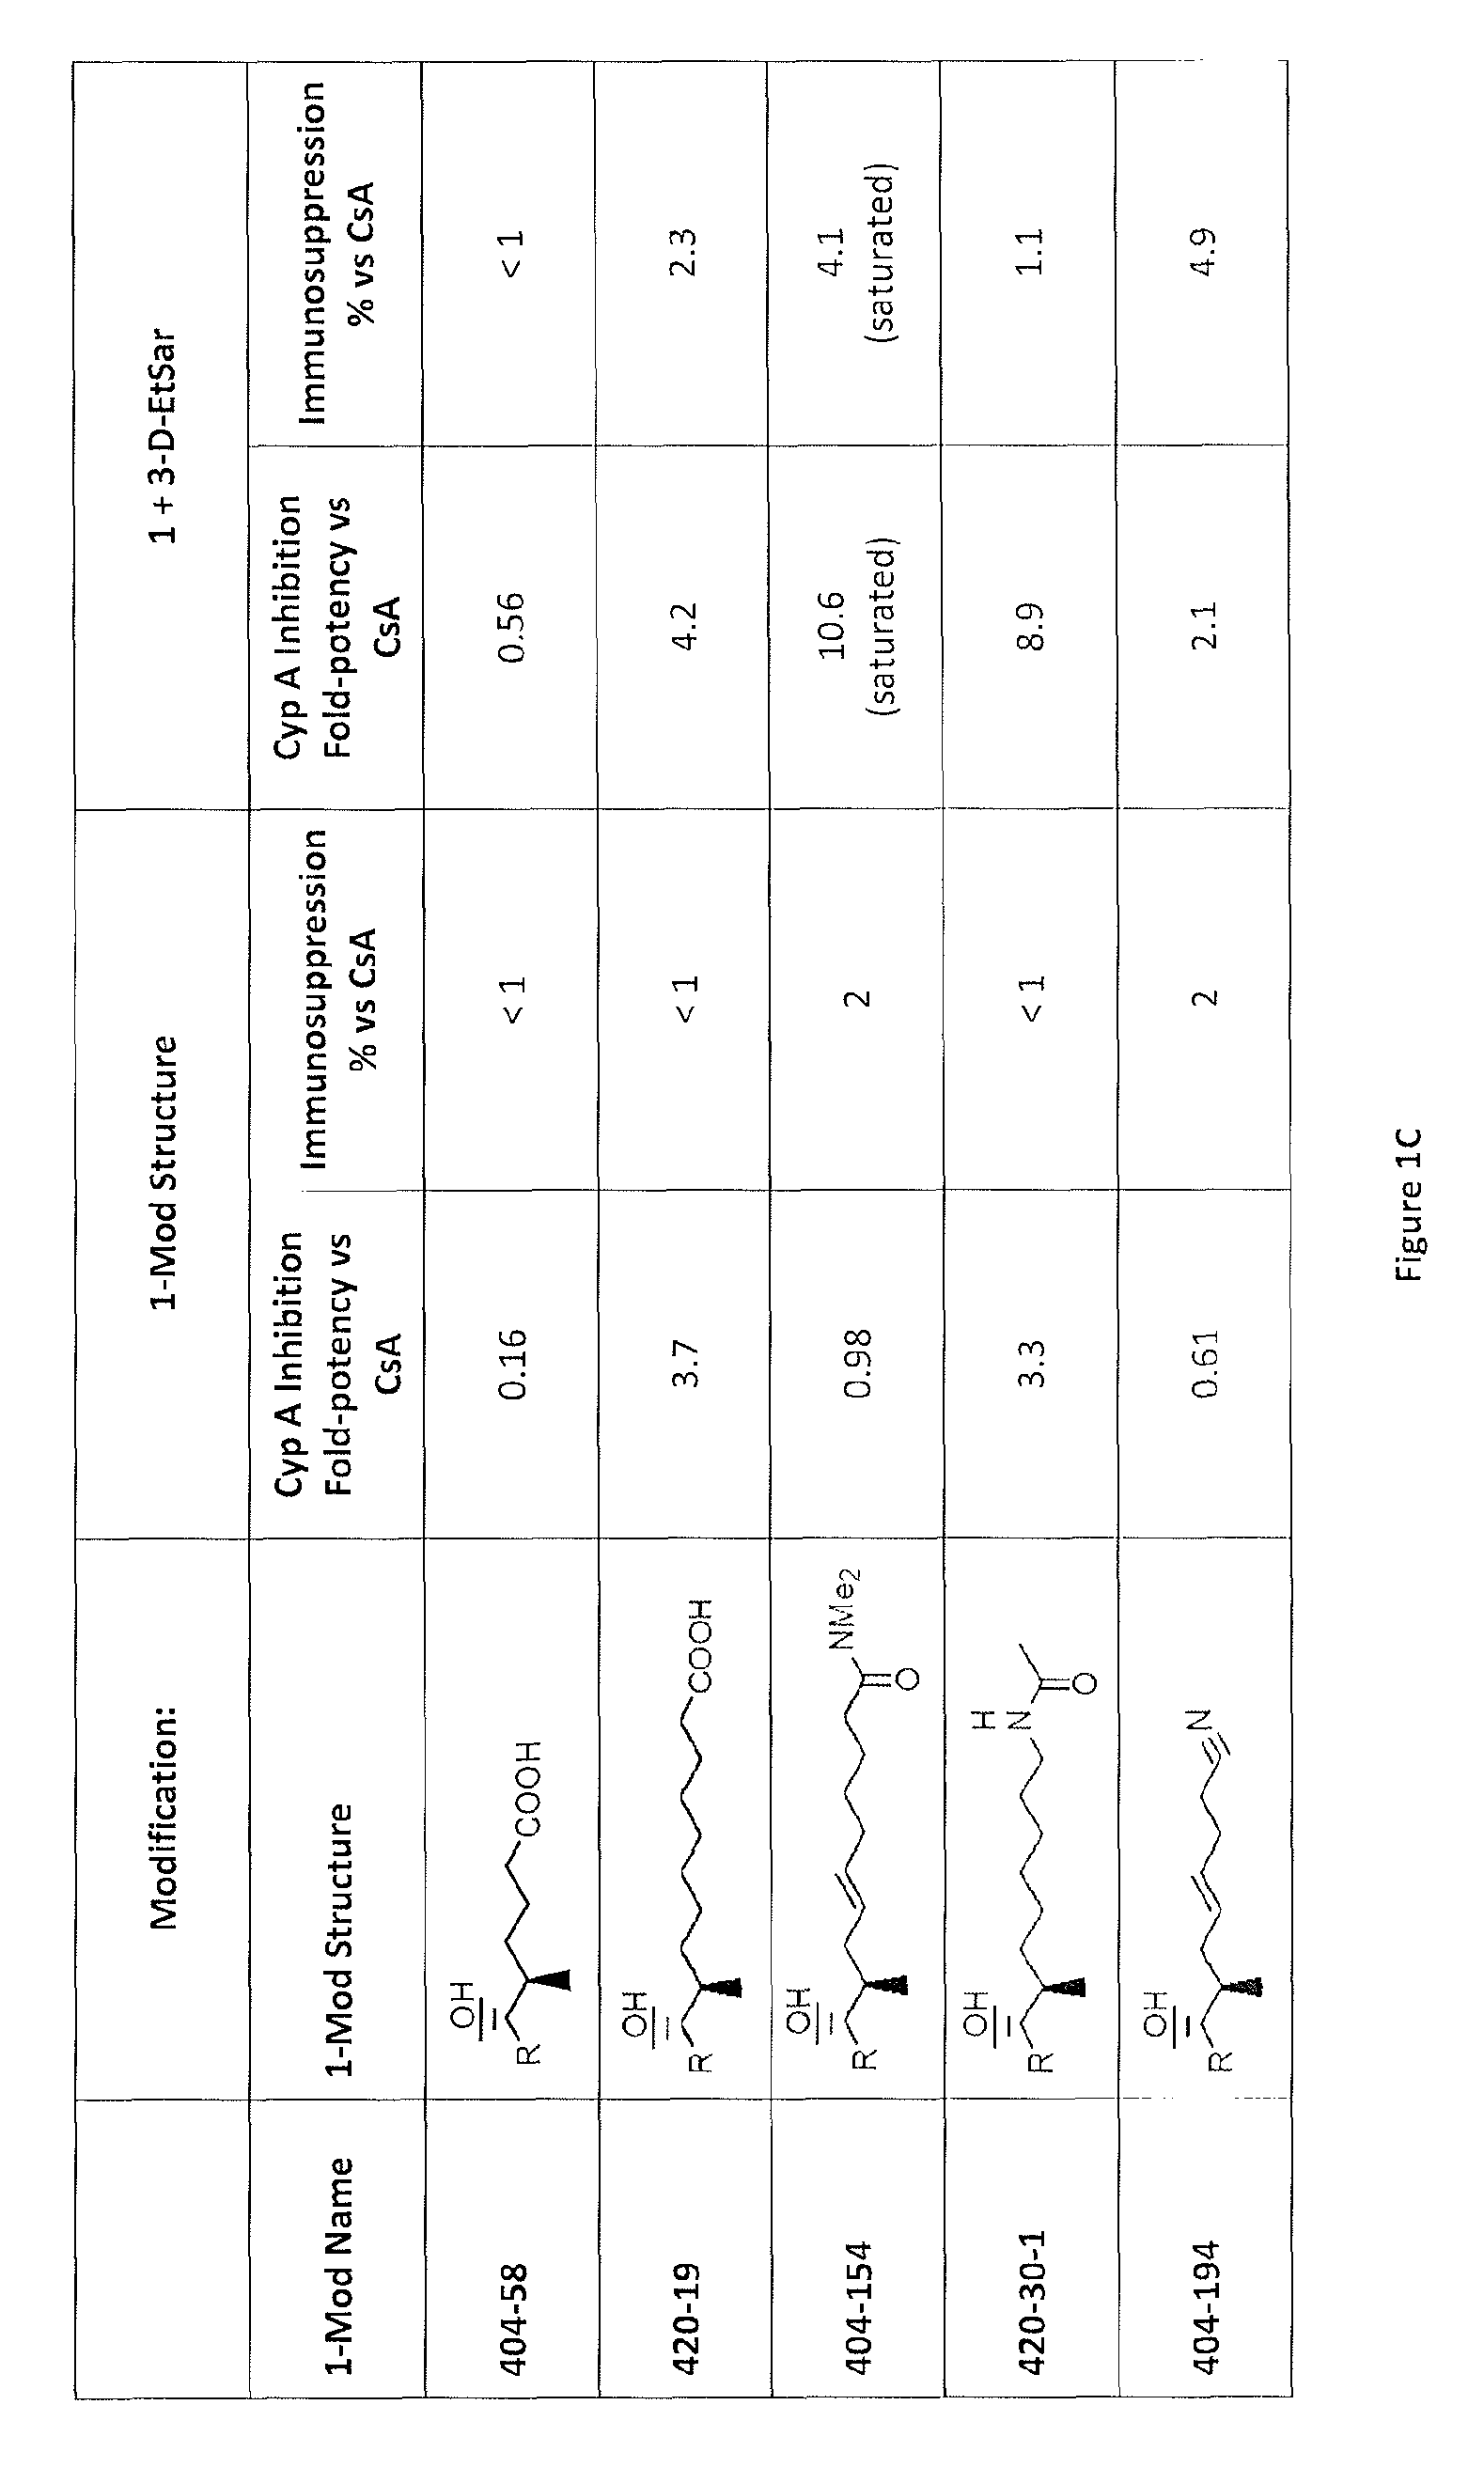 Cyclosporine analogue molecules modified at amino acid 1 and 3